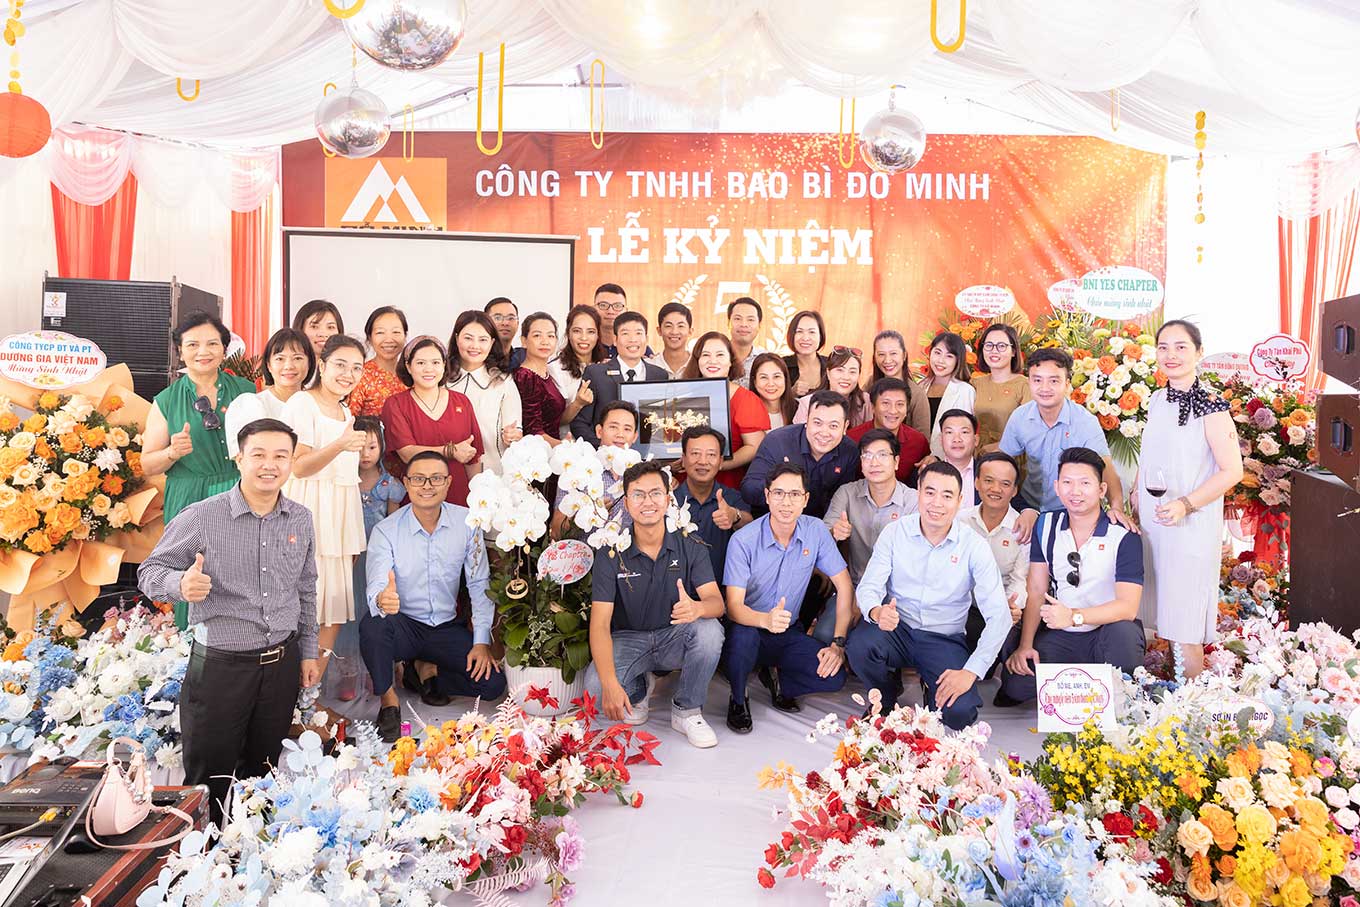 Lễ kỉ niệm 5 năm ngày thành lập Công ty TNHH Bao Bì Đỗ Minh